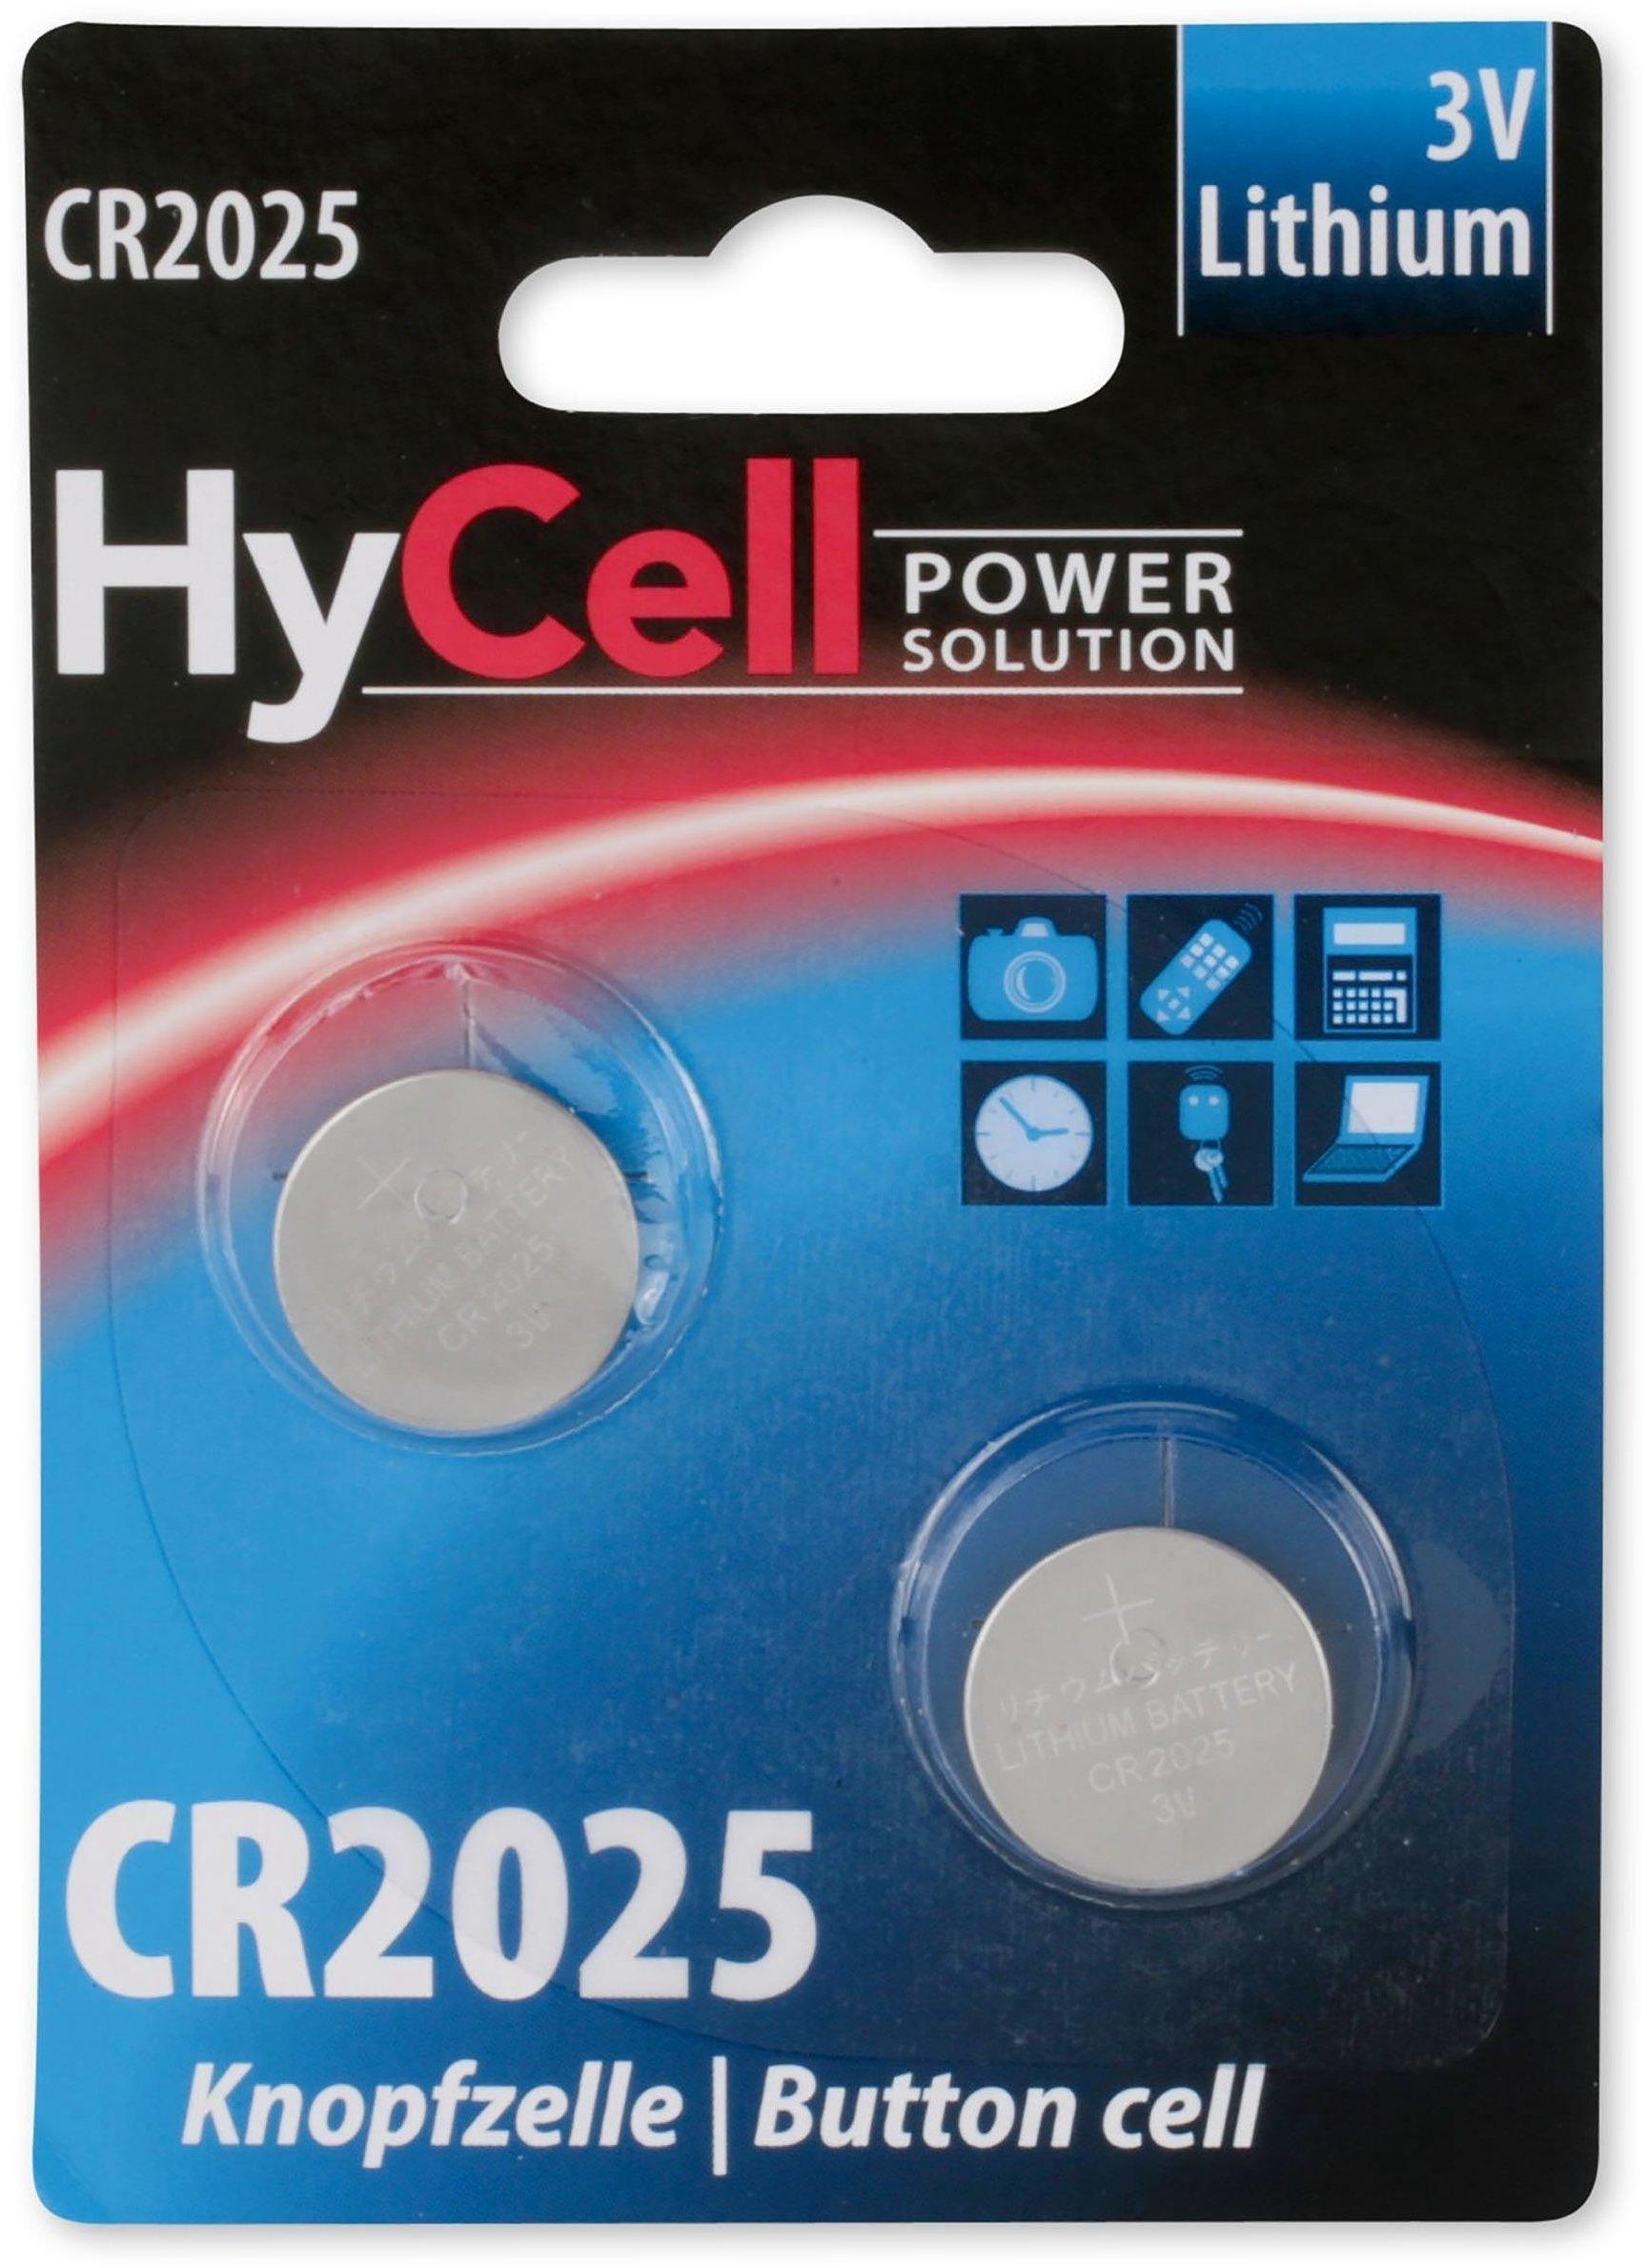 HyCell Power Solution CR2025 Lithium 3V (2 St.) Test ❤️ Testbericht.de  Februar 2022